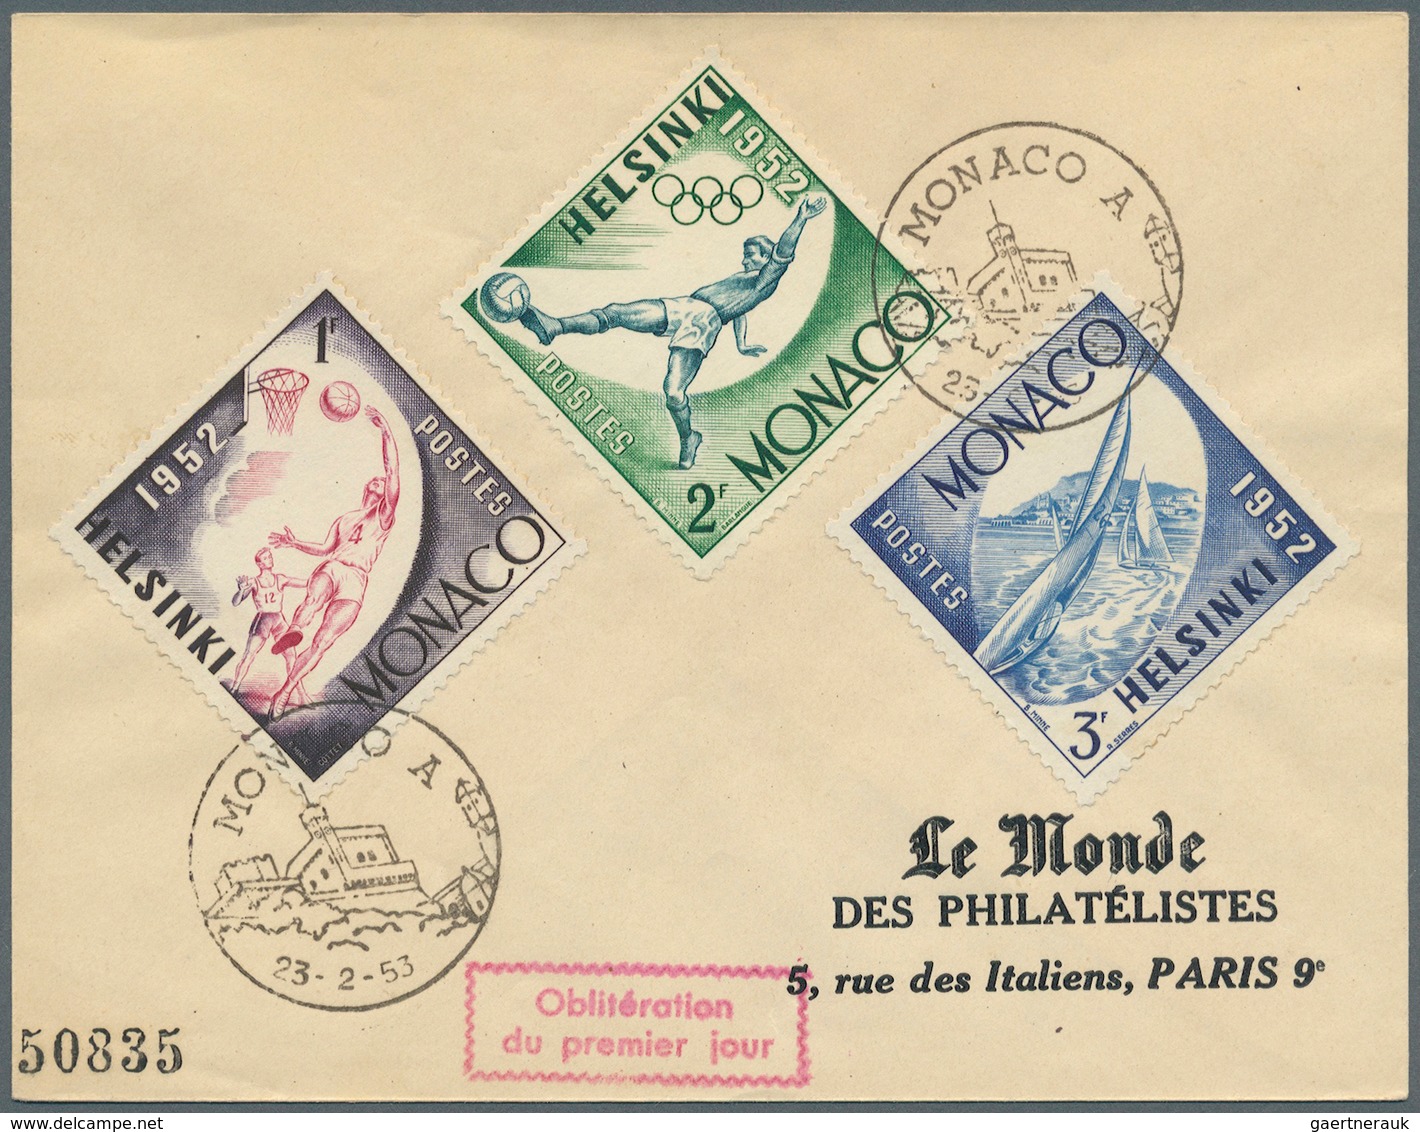 26429 Frankreich: 1925/1962, Frankreich und Kolonien, Partie von ca. 57 Belegen, dabei dekorative Flugpost